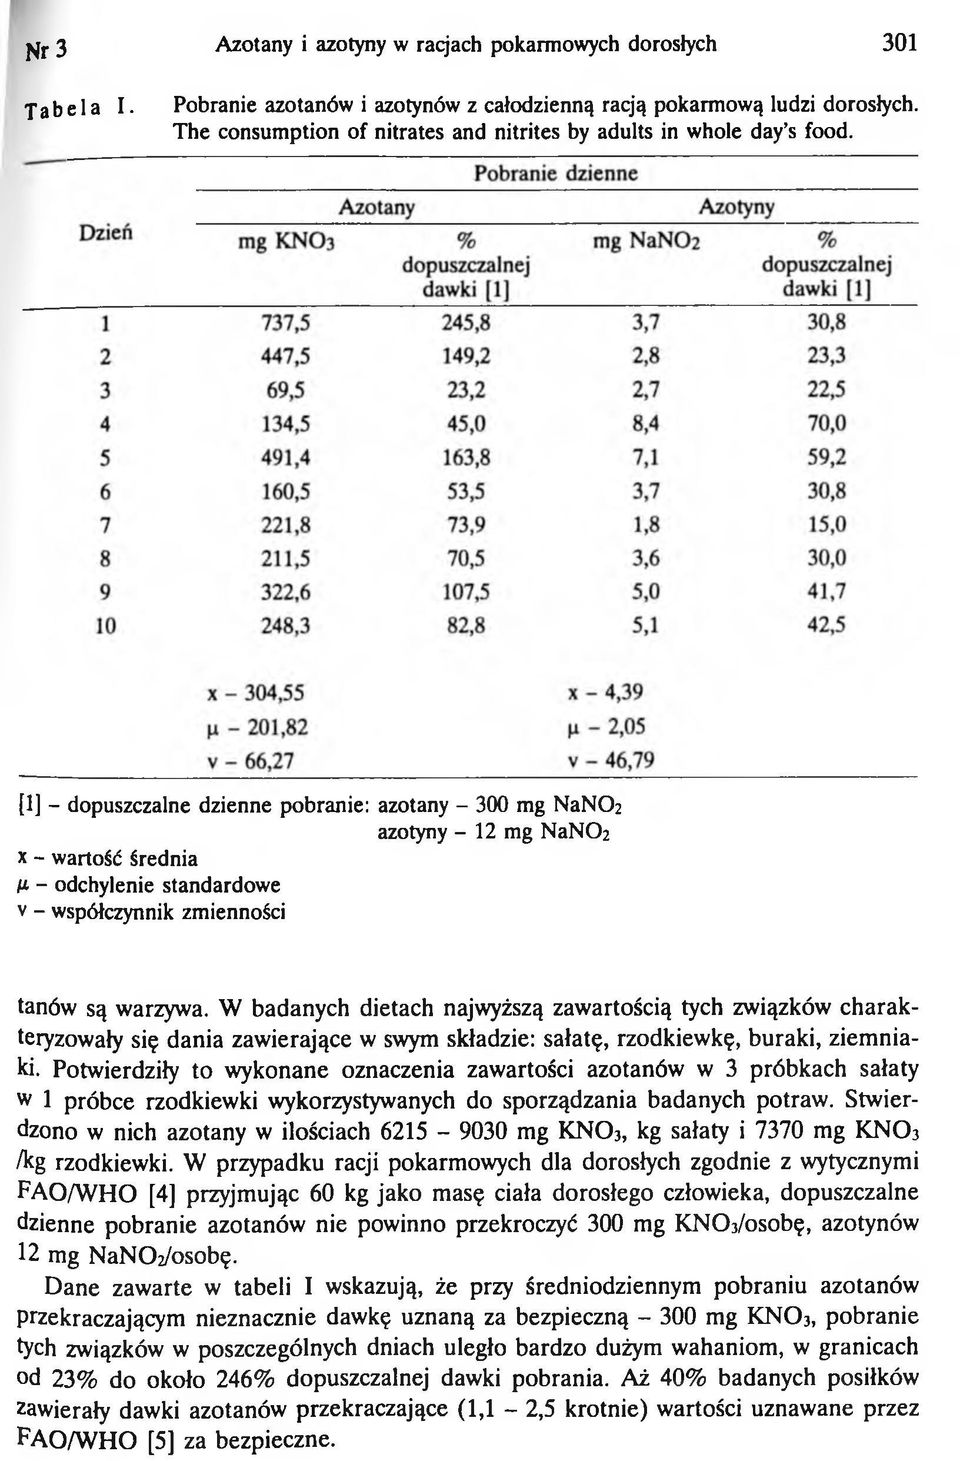 [1] - dopuszczalne dzienne pobranie: azotany - 300 mg NaNCh azotyny - 12 mg NaNCh x - wartość średnia /x - odchylenie standardowe v - współczynnik zmienności tanów są warzywa.